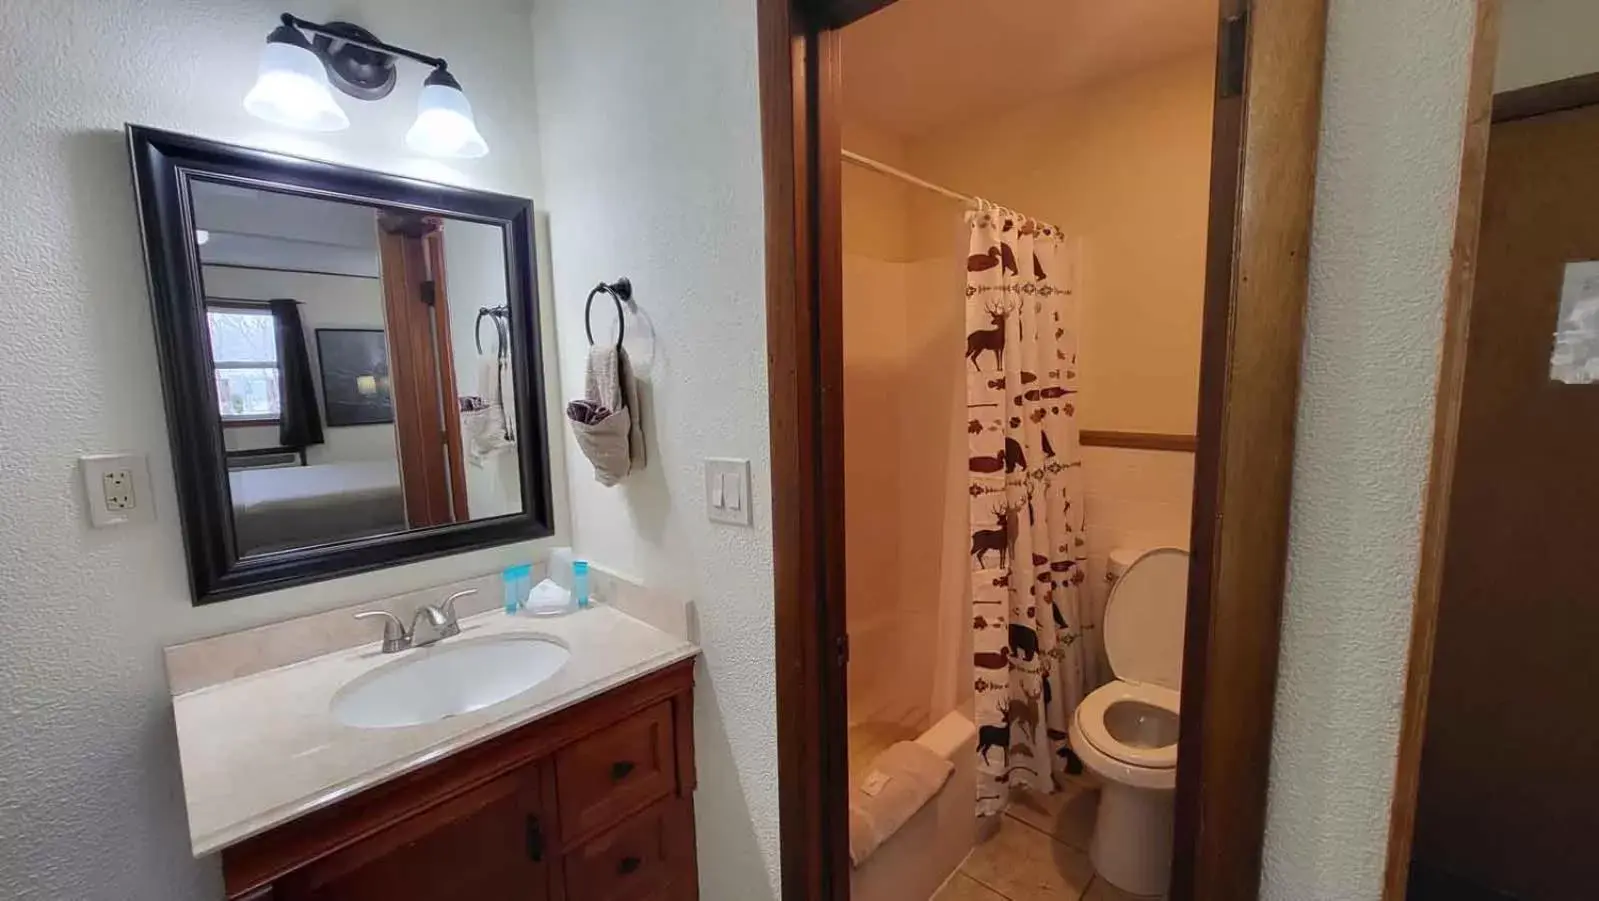 Toilet, Bathroom in Hunter's Friend Resort Near Table Rock Lake